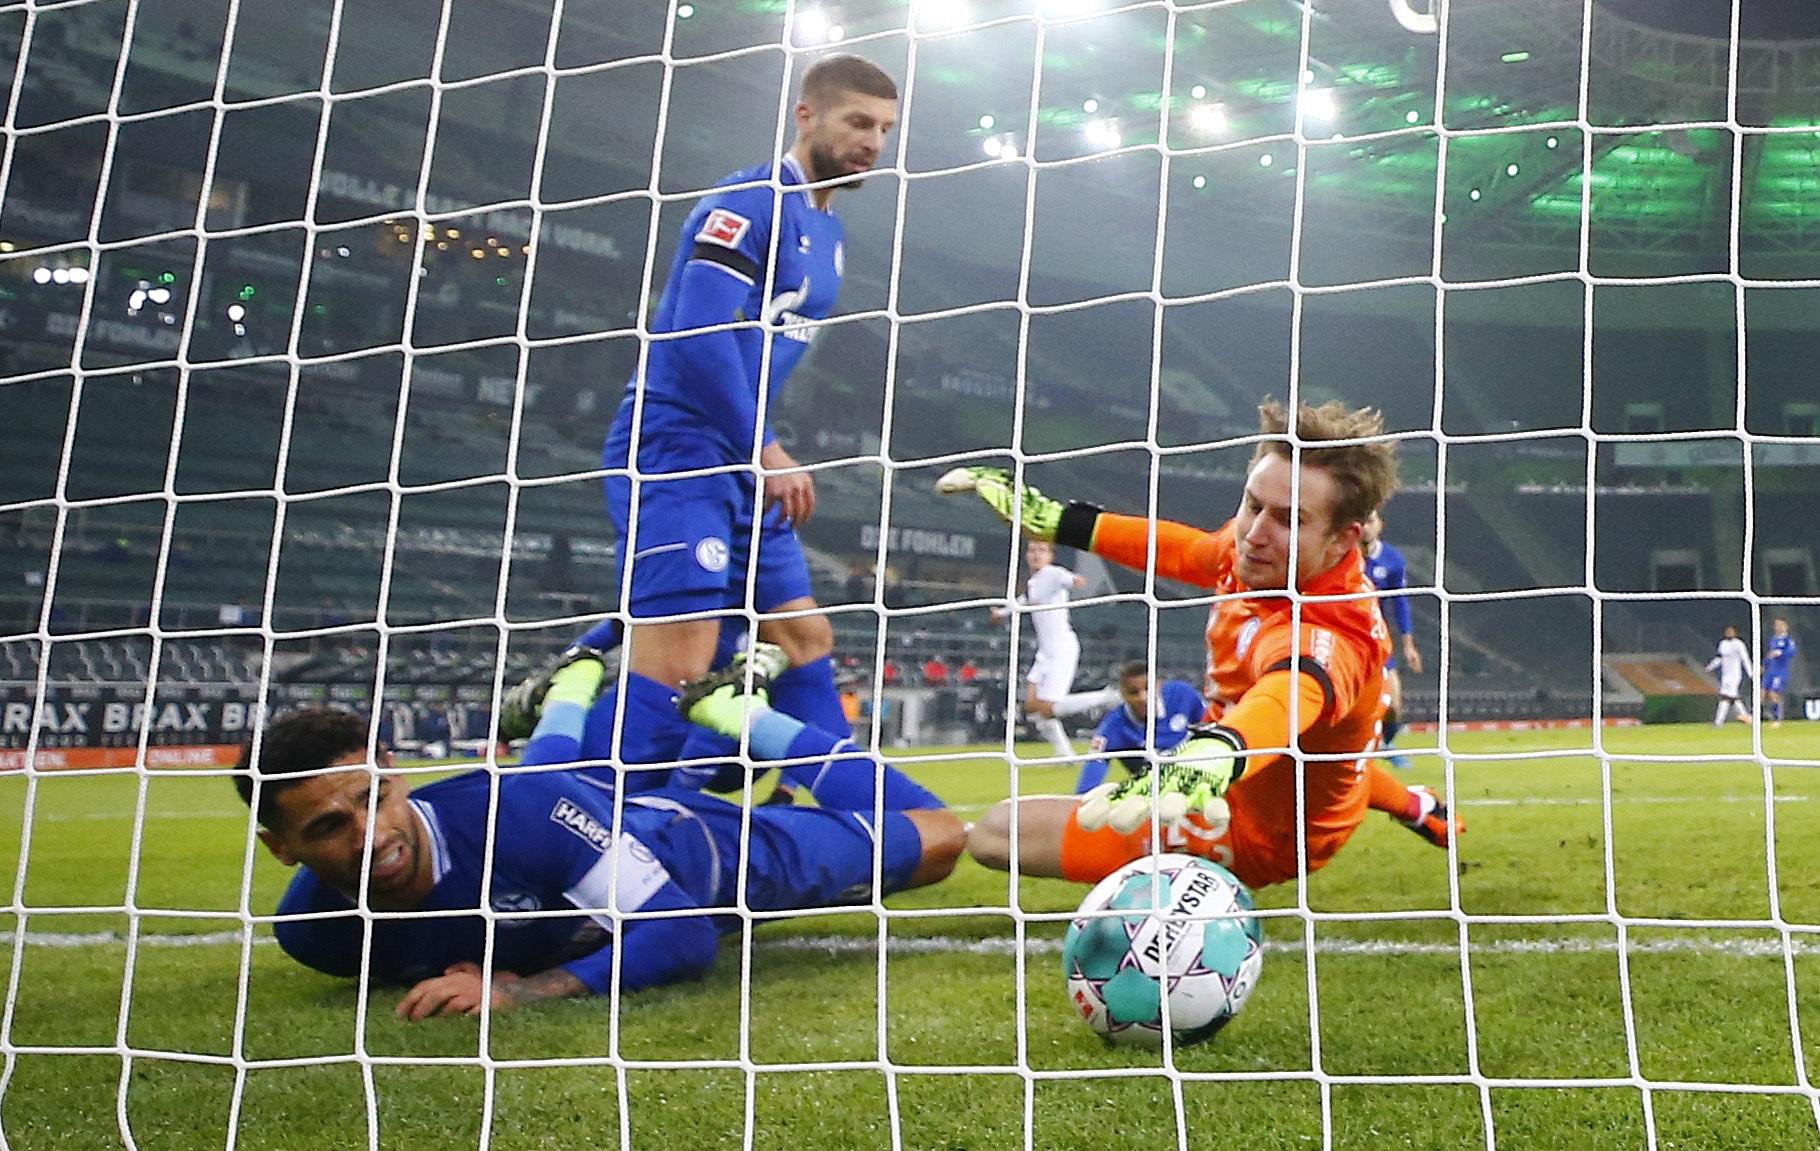 Definicioni i katastrofës: Skuadra e njohur gjermane nuk di për fitore në 25 ndeshje në Bundesligë